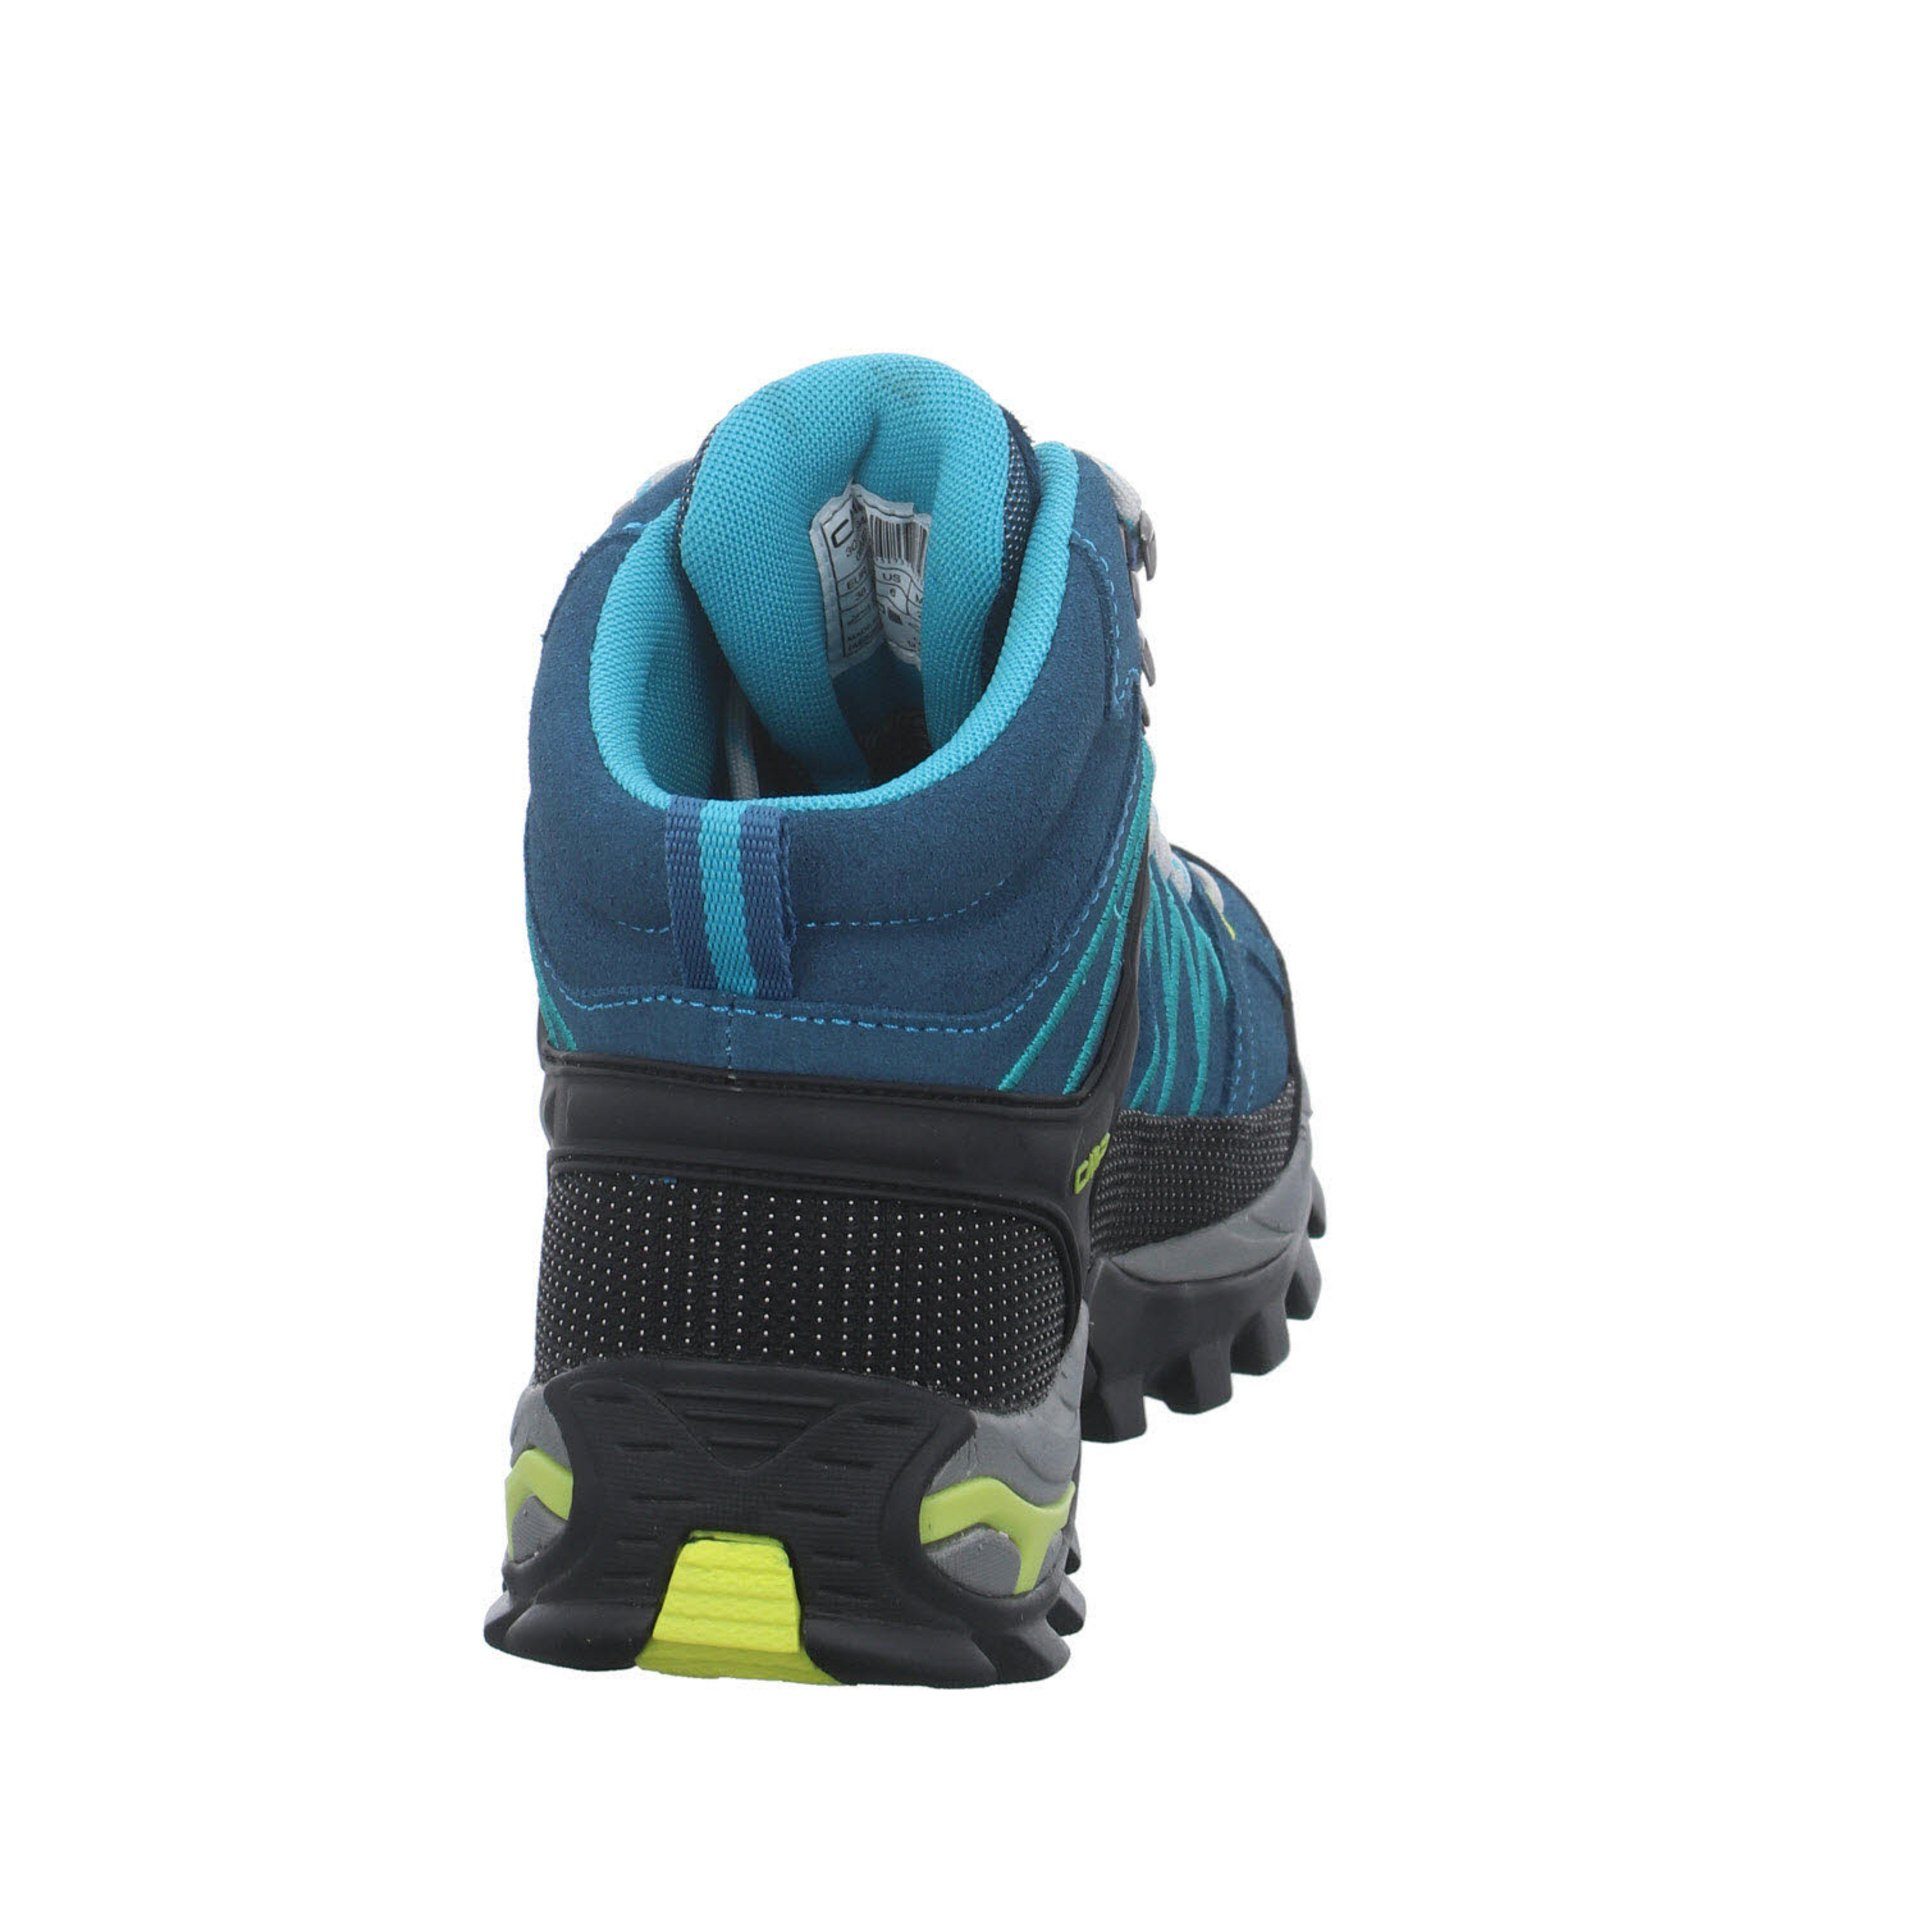 CMP Damen Schuhe DEEP Outdoor LAKE-BALTIC Leder-/Textilkombination Rigel Mid Outdoorschuh Outdoorschuh